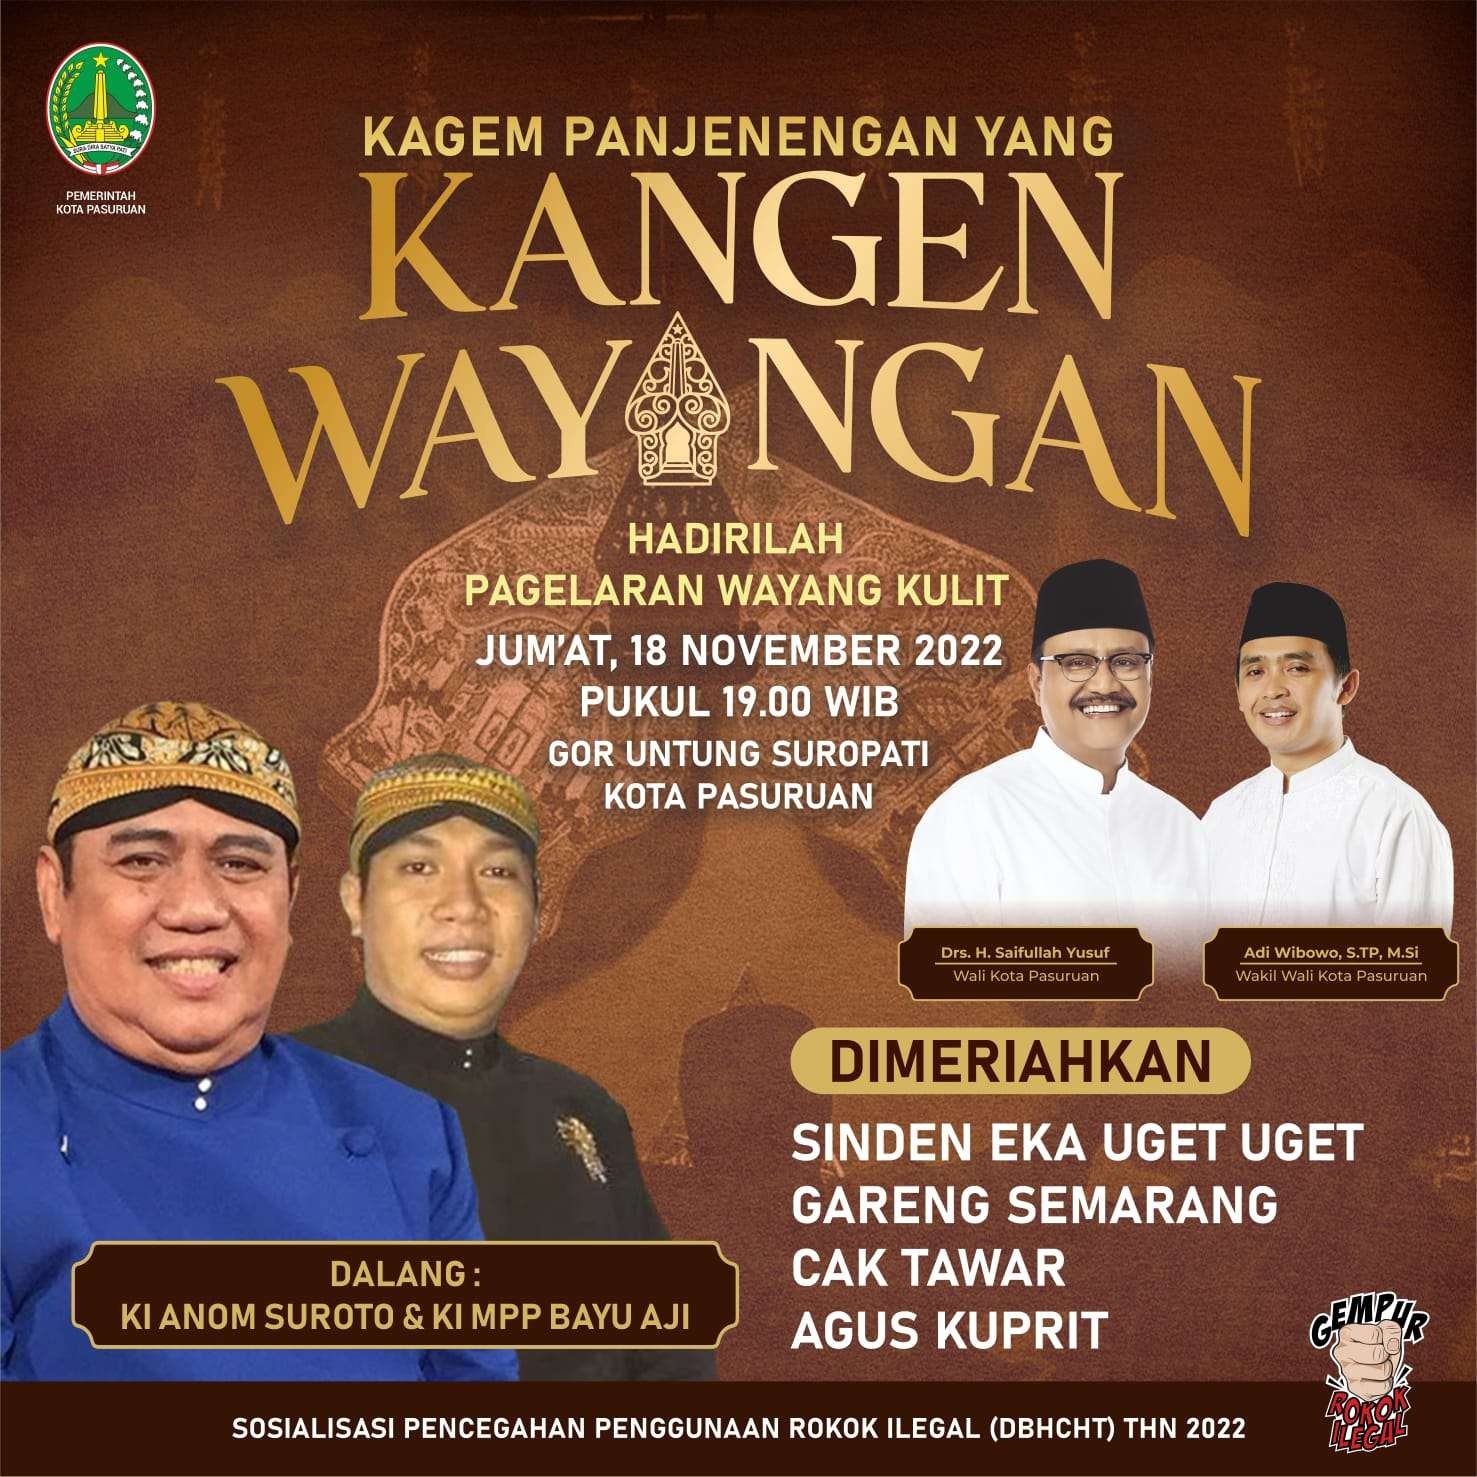 Walikota Pasuruan, Saifullah Yusuf atau Gus Ipul mengundang dalang Ki Anom Suroto untuk melestarikan kesenian sekaligus menghibur warga. (Foto: Pemkot Pasuruan)